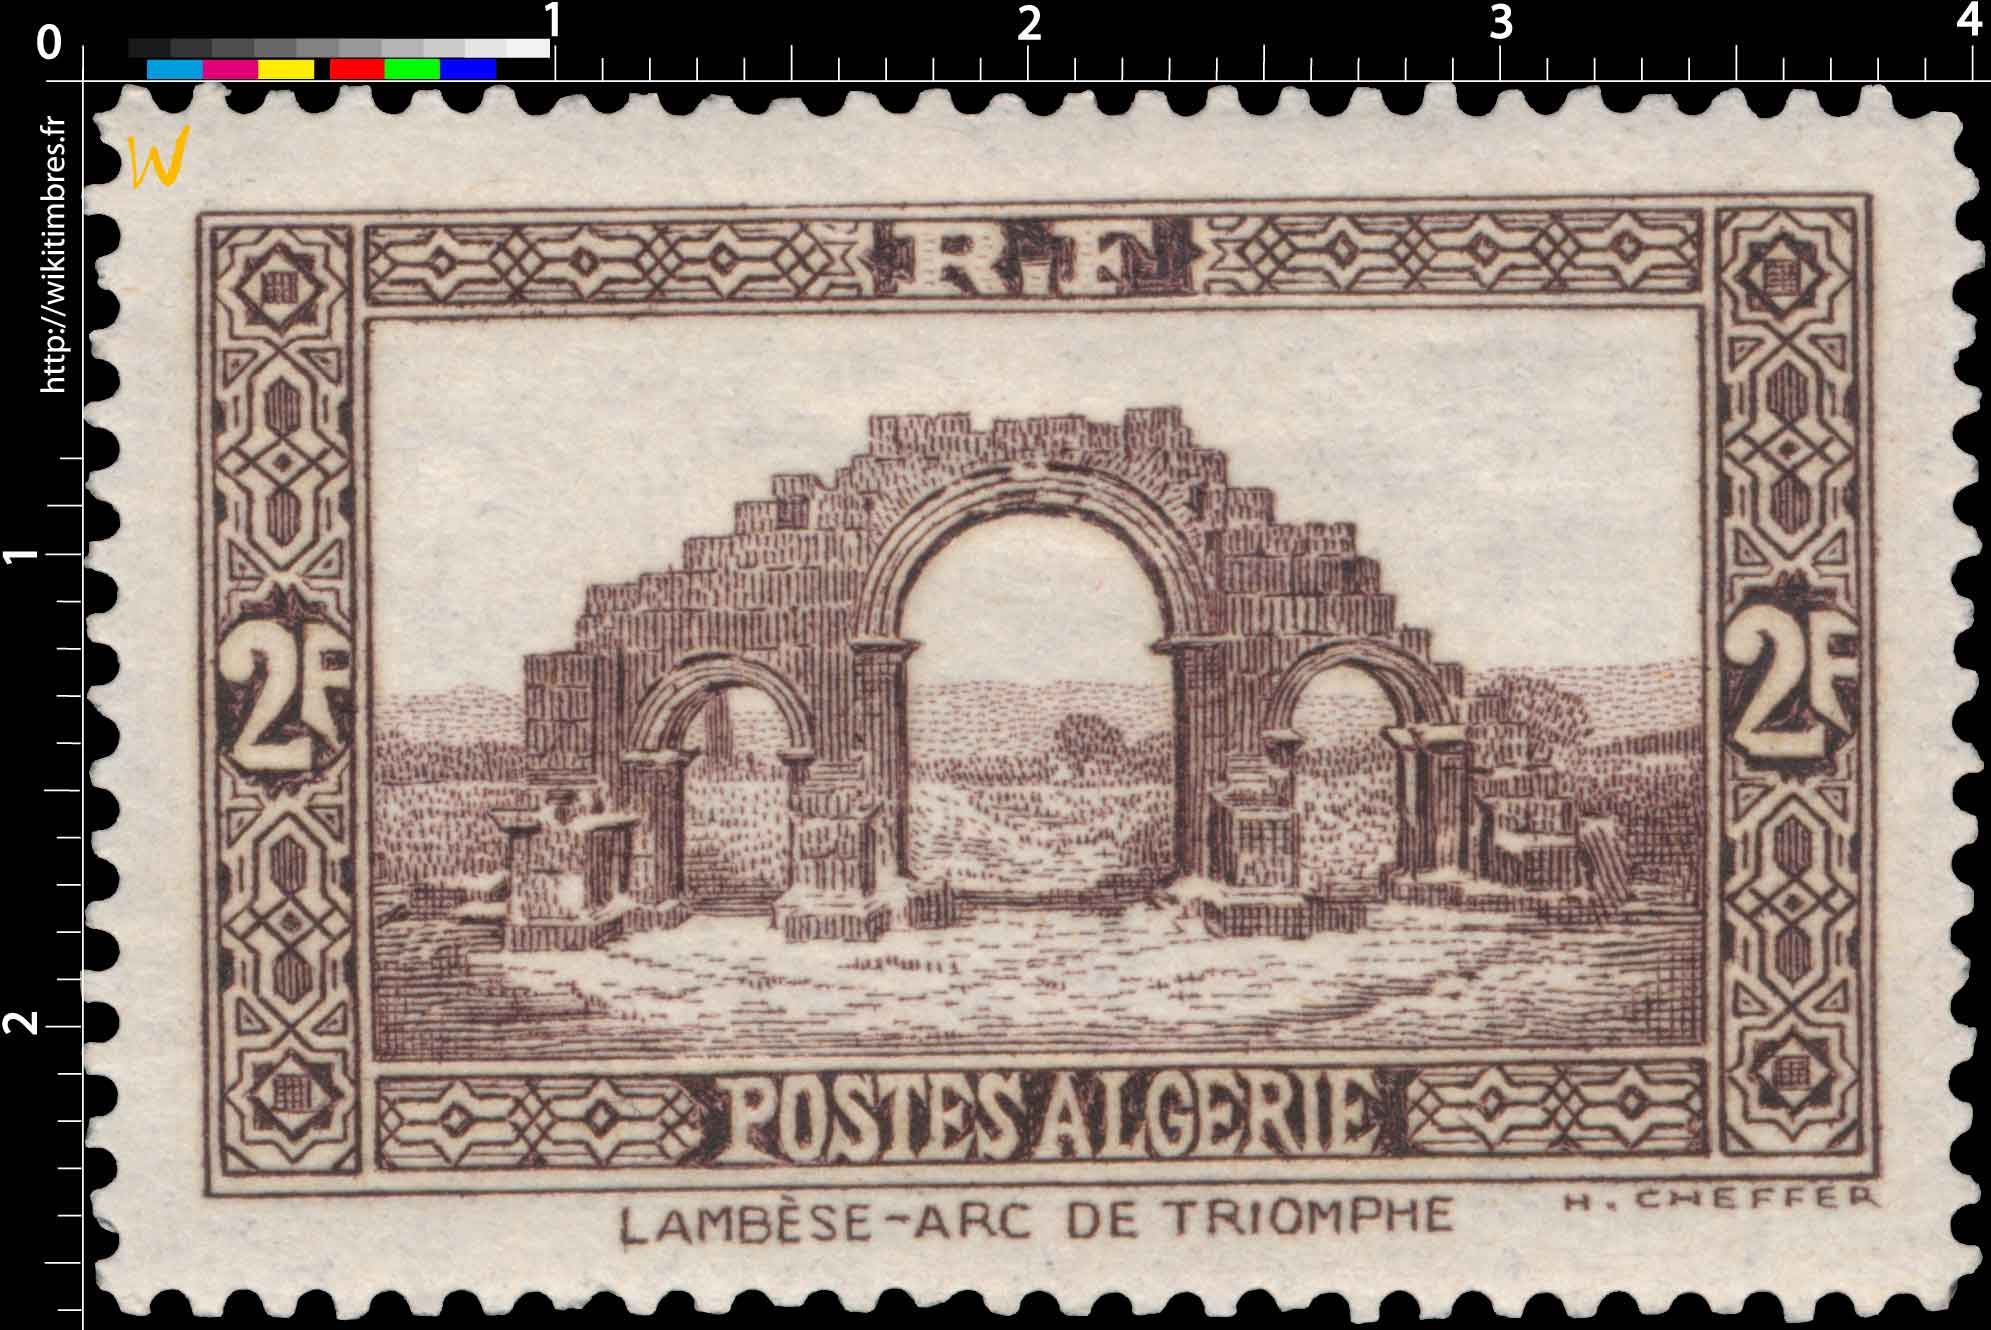 Algérie - Arc de triomphe Lambèse